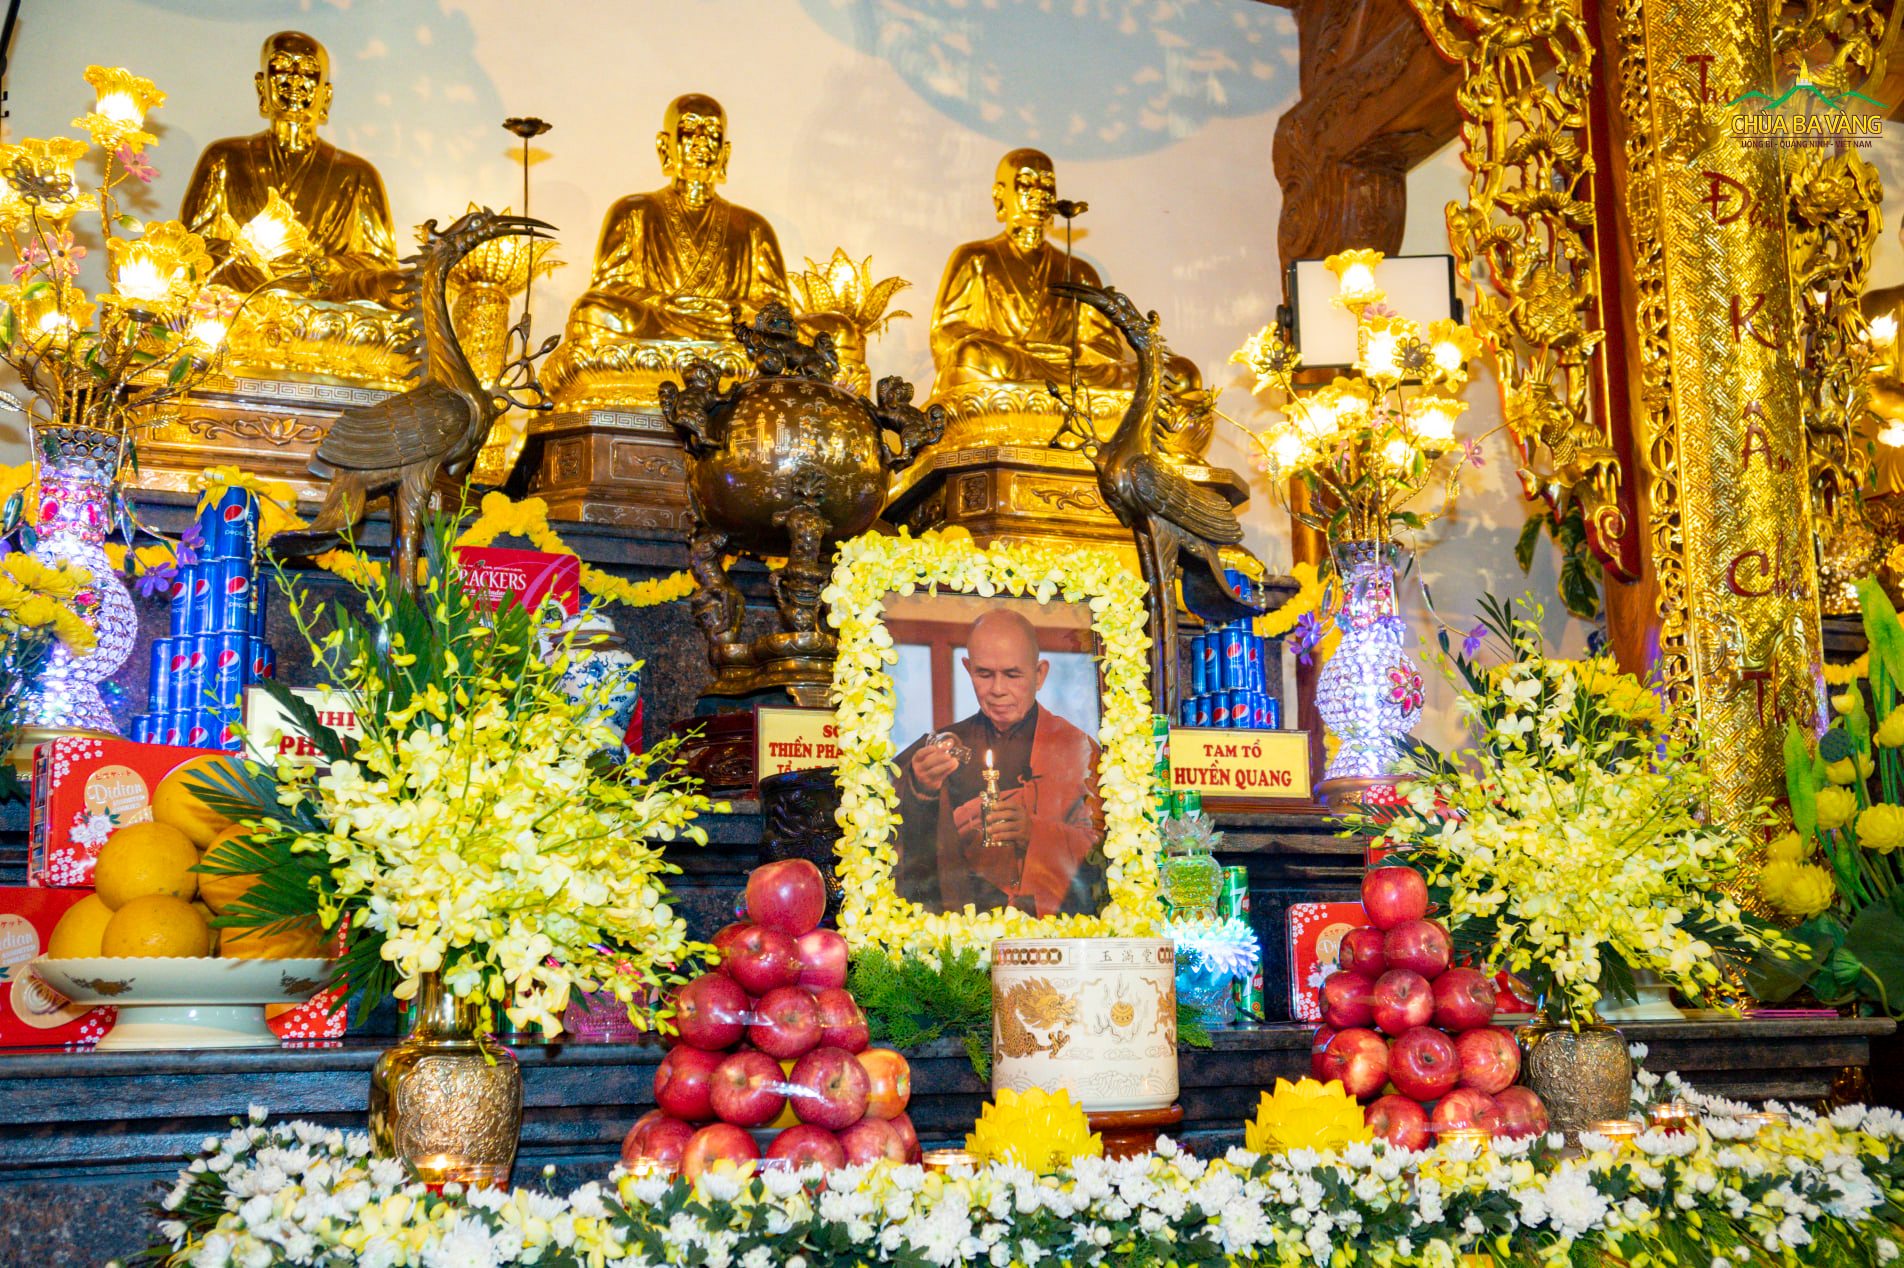 Linh ảnh của Thiền sư Thích Nhất Hạnh được đặt tại tổ đường chùa Ba Vàng